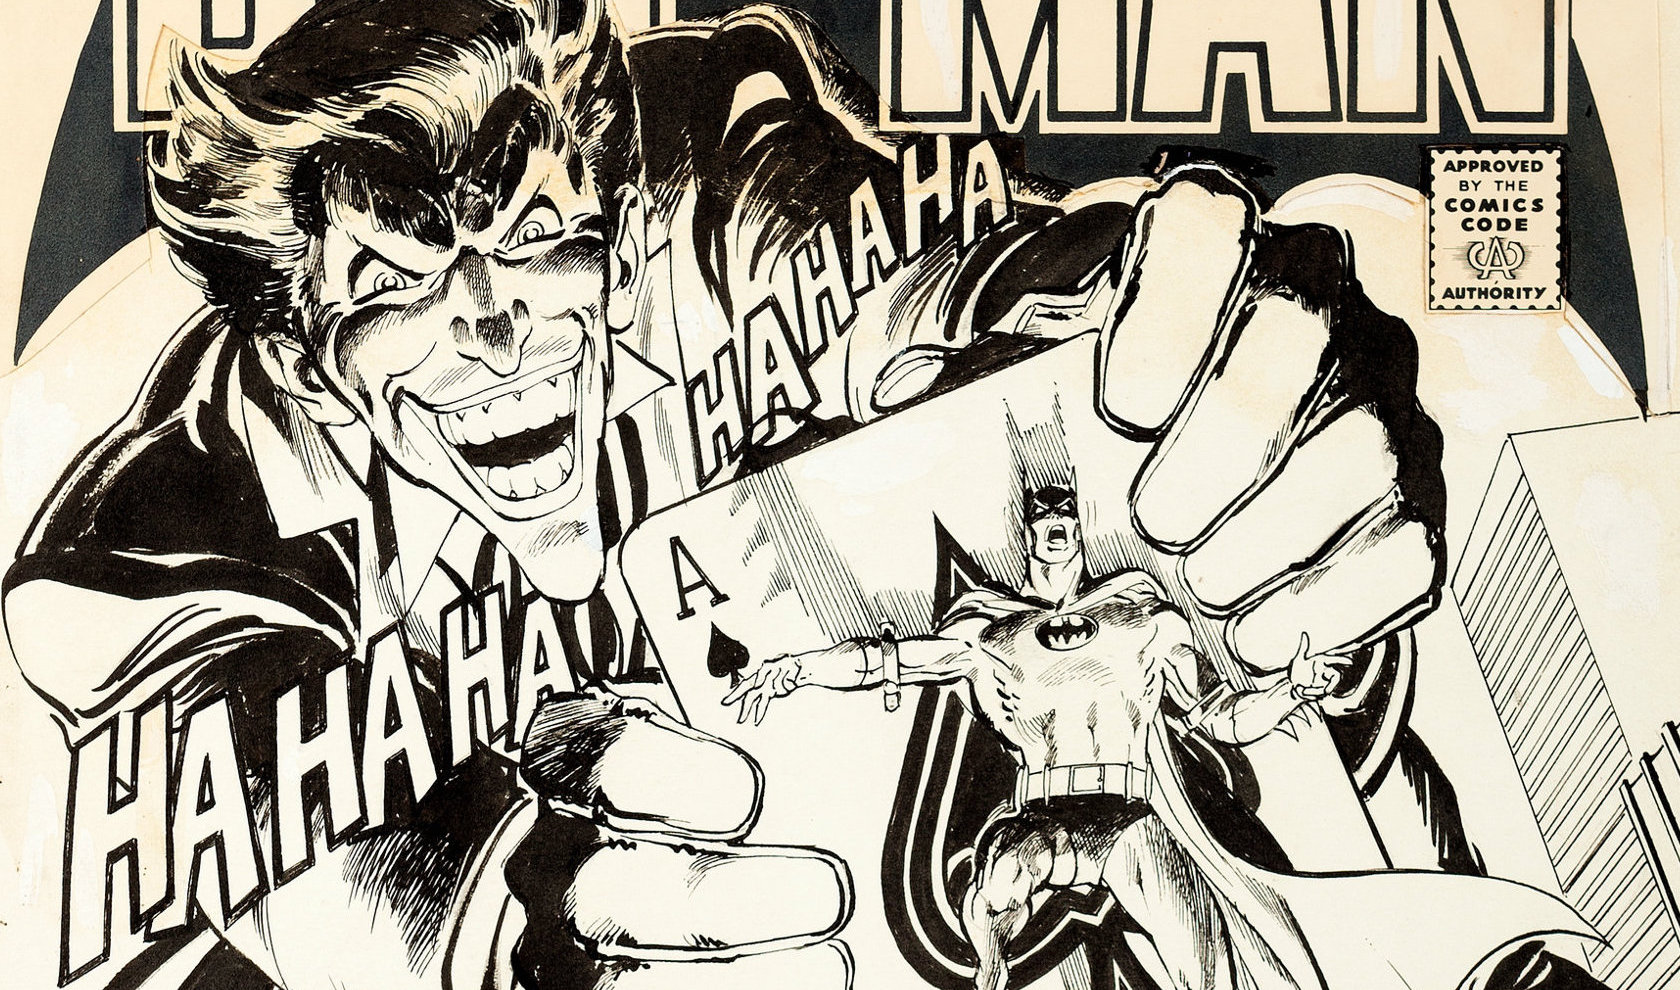 NEAL ADAMS' Original BATMAN #251 Cover Art Could Sell for $250,000 | 13th  Dimension, Comics, Creators, Culture